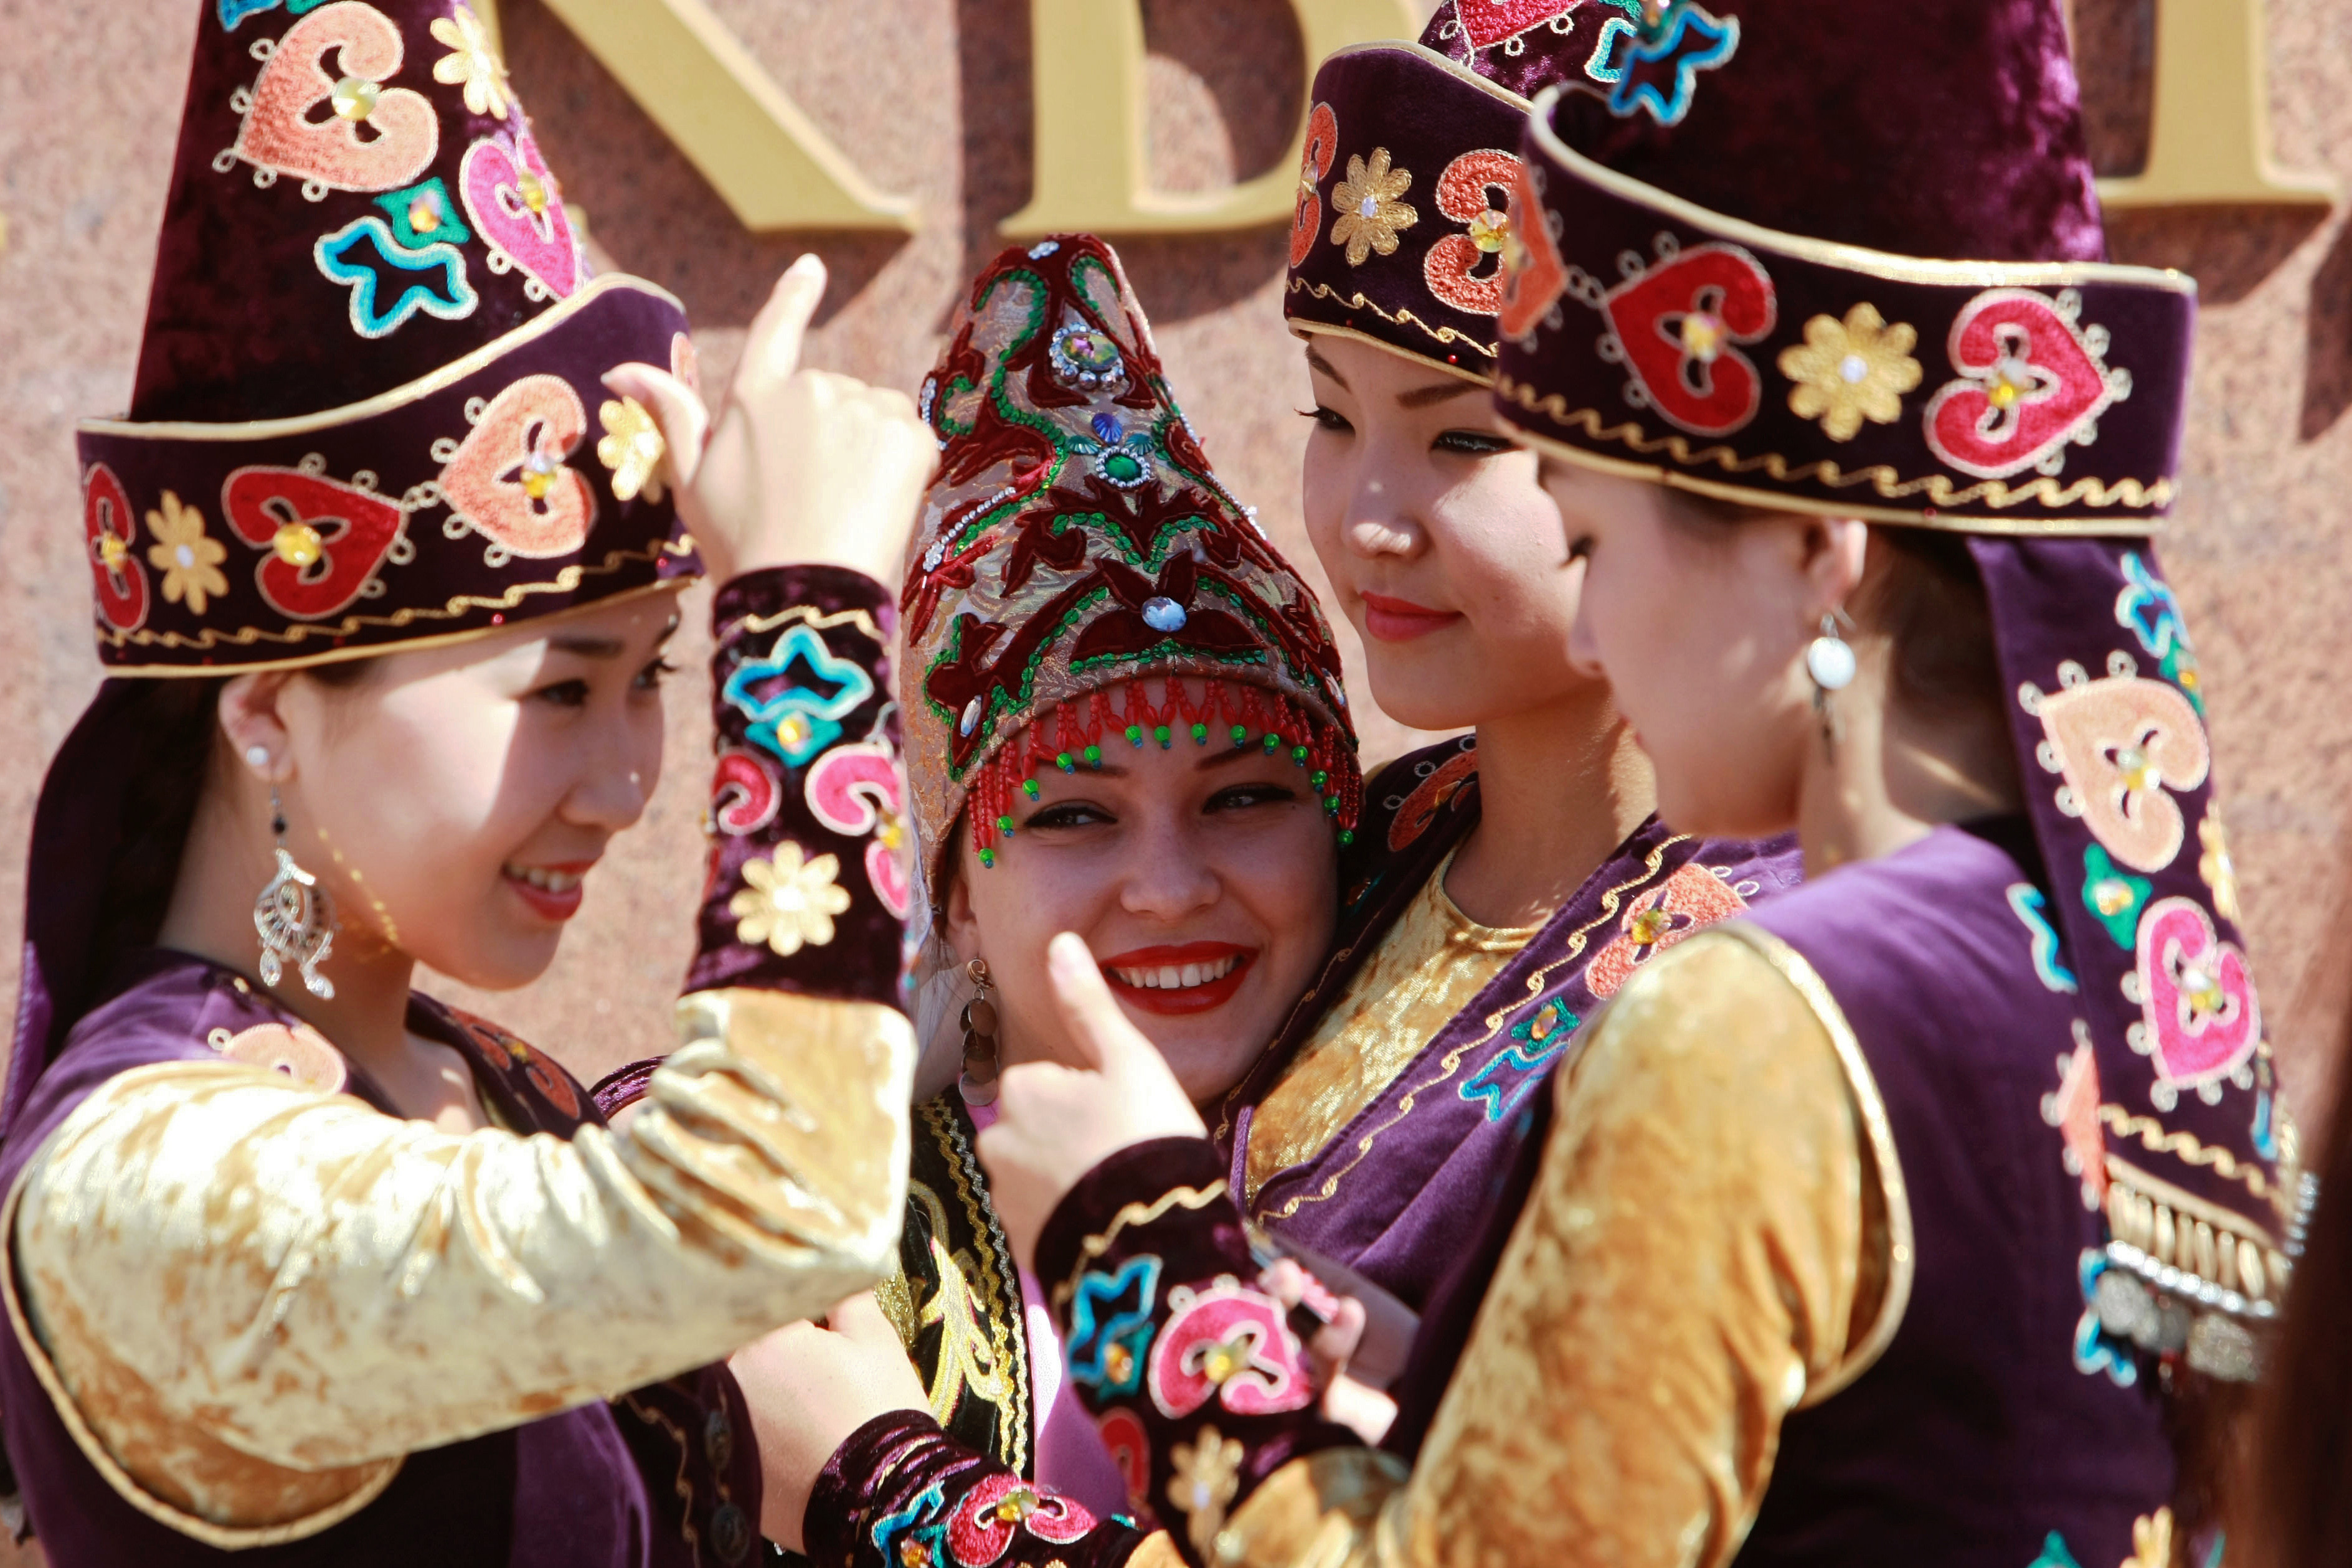 <p>Девушки в национальных костюмах во время празднования Дня независимости Киргизии на площади Ала-Тоо в Бишкеке.</p>
<p><span>Фото: &copy; РИА Новости /&nbsp;Владимир Пирогов</span></p>